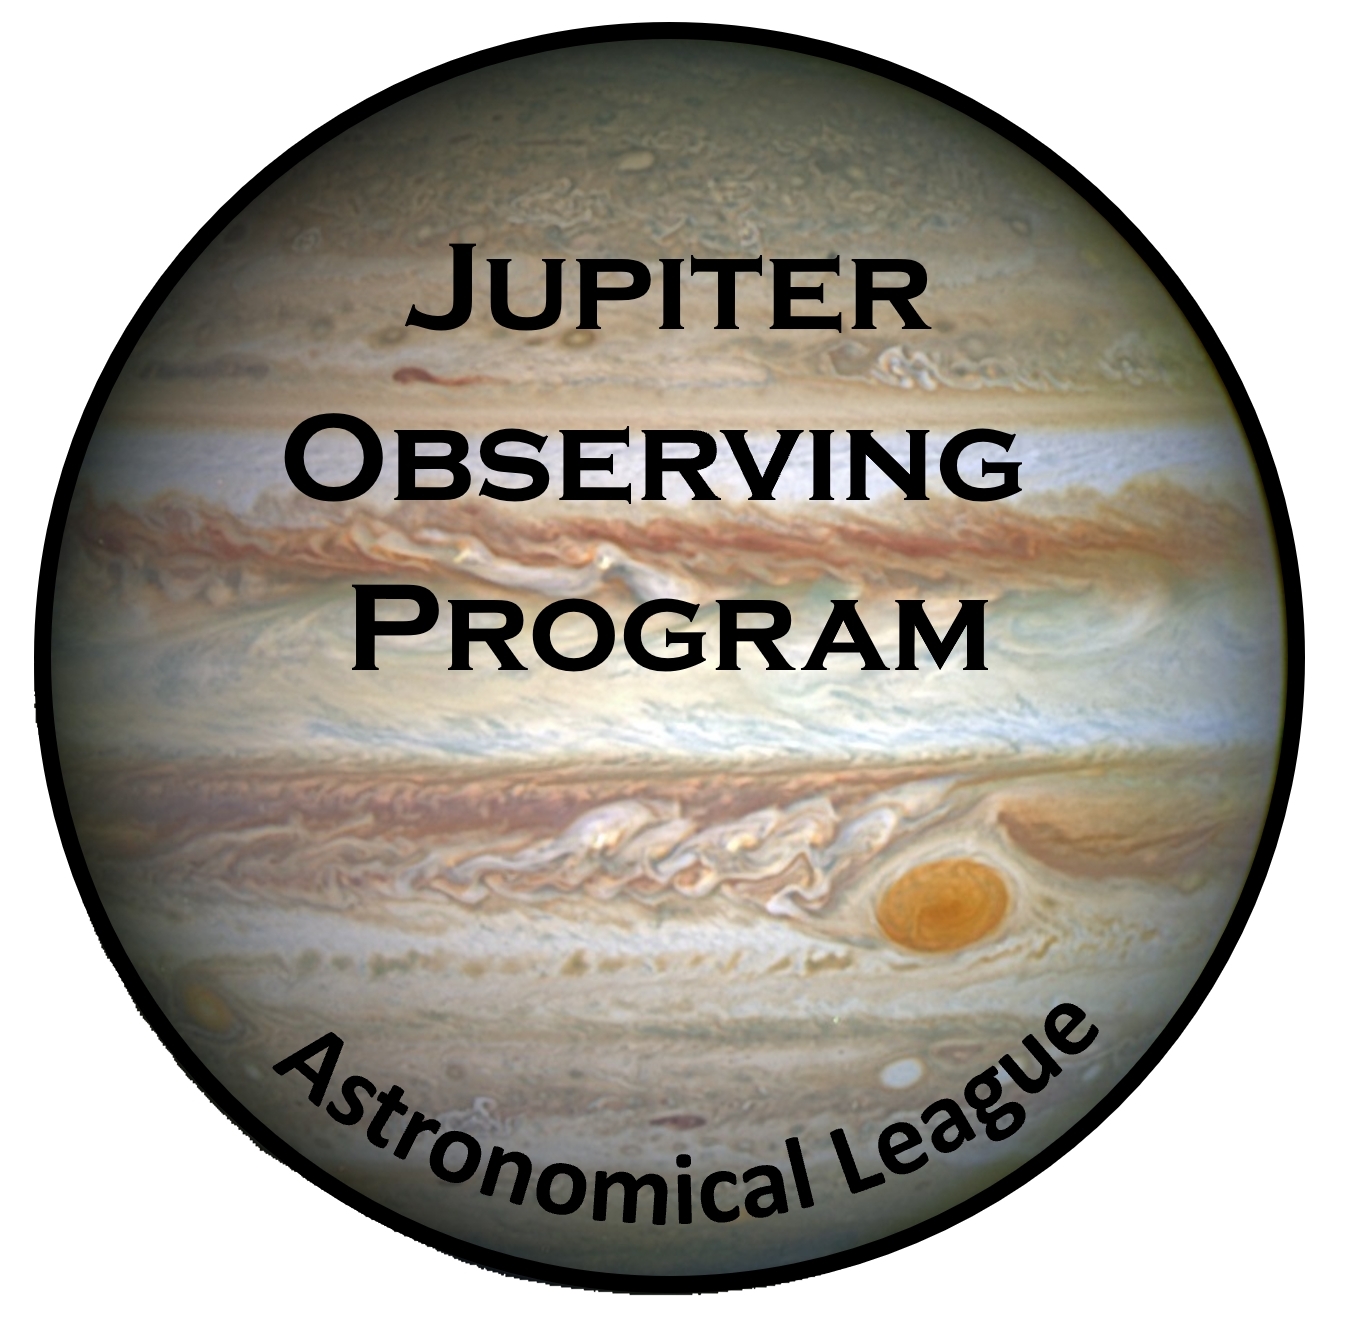 Jupiter Observing Program Pin